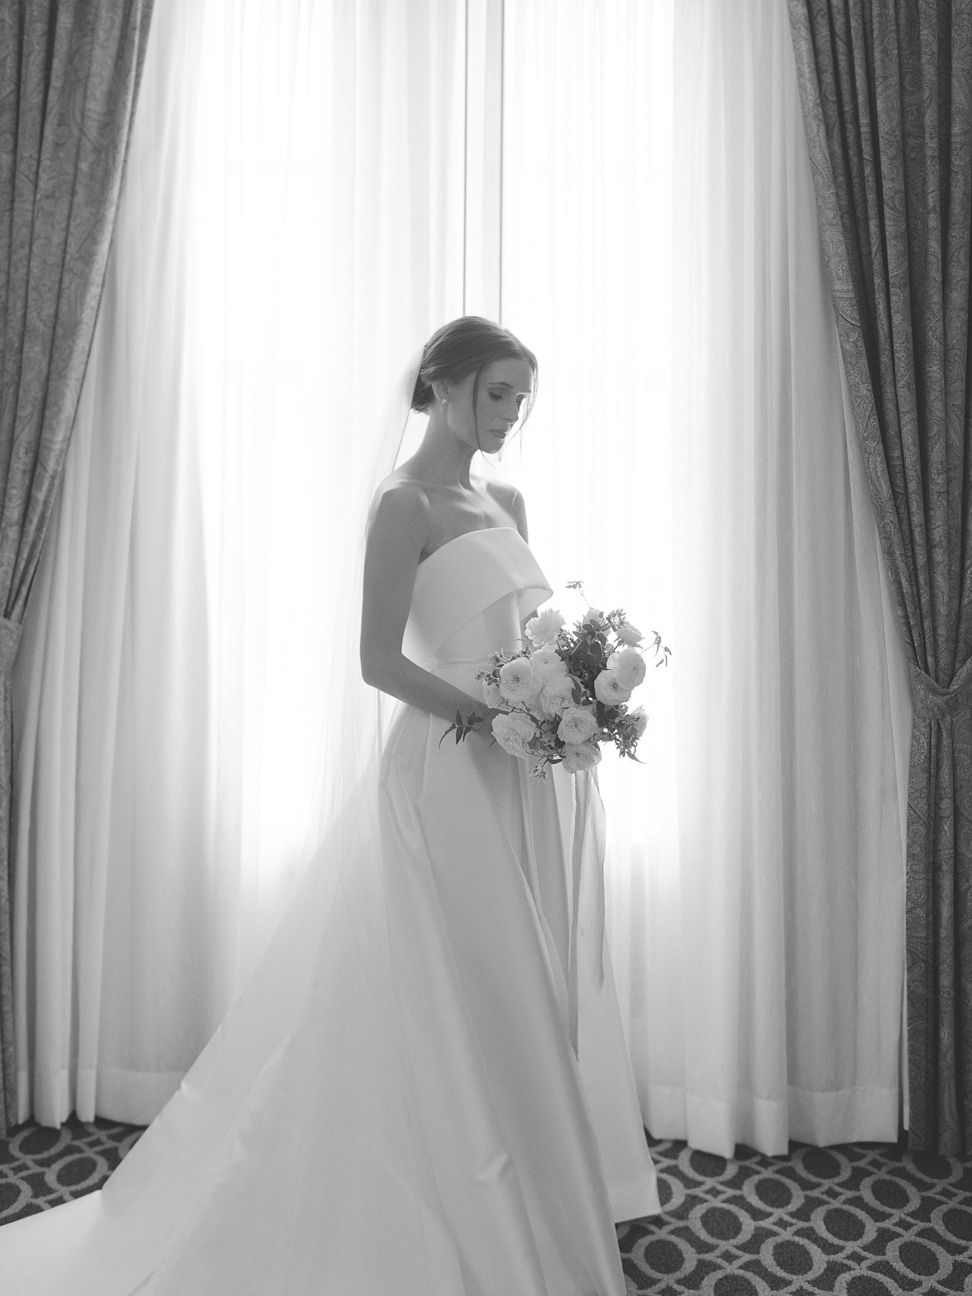 KarenHillPhotography-Lasch-Wedding-0108.jpg